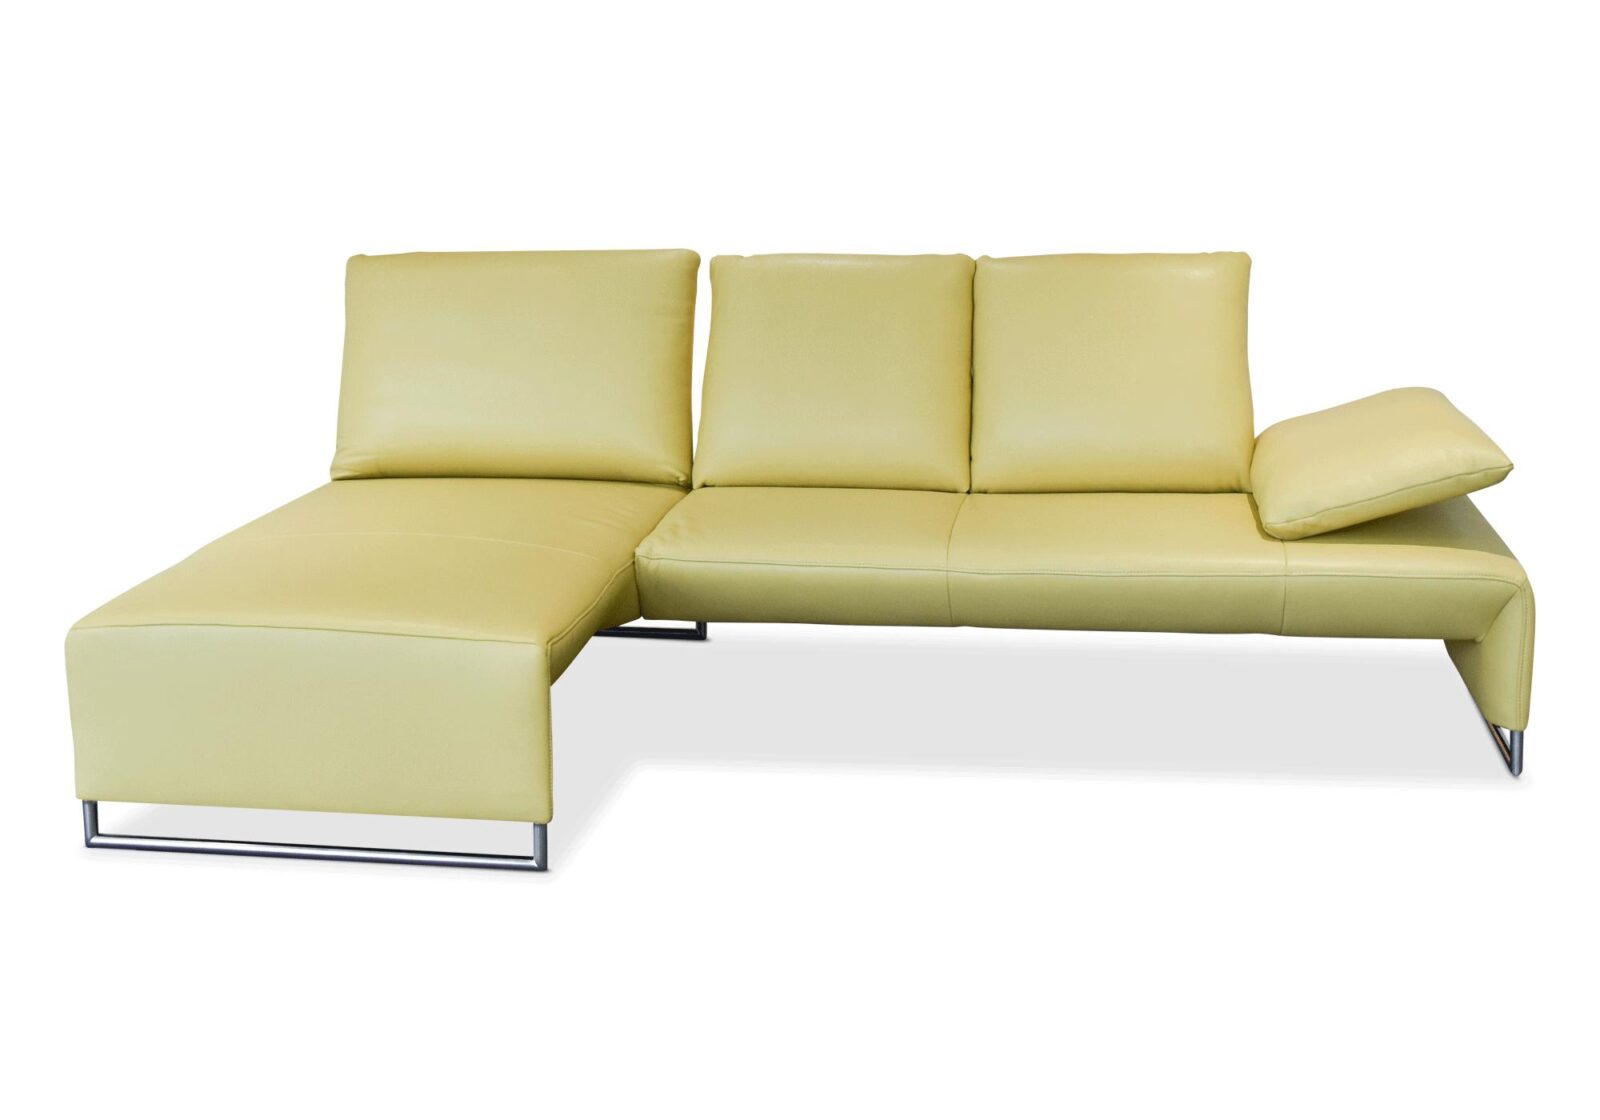 Sofa Ramon Koinor mit Sitztiefenverstellung. Bezug: Leder. Farbe: Gelb. Erhältlich bei Möbel Gallati.